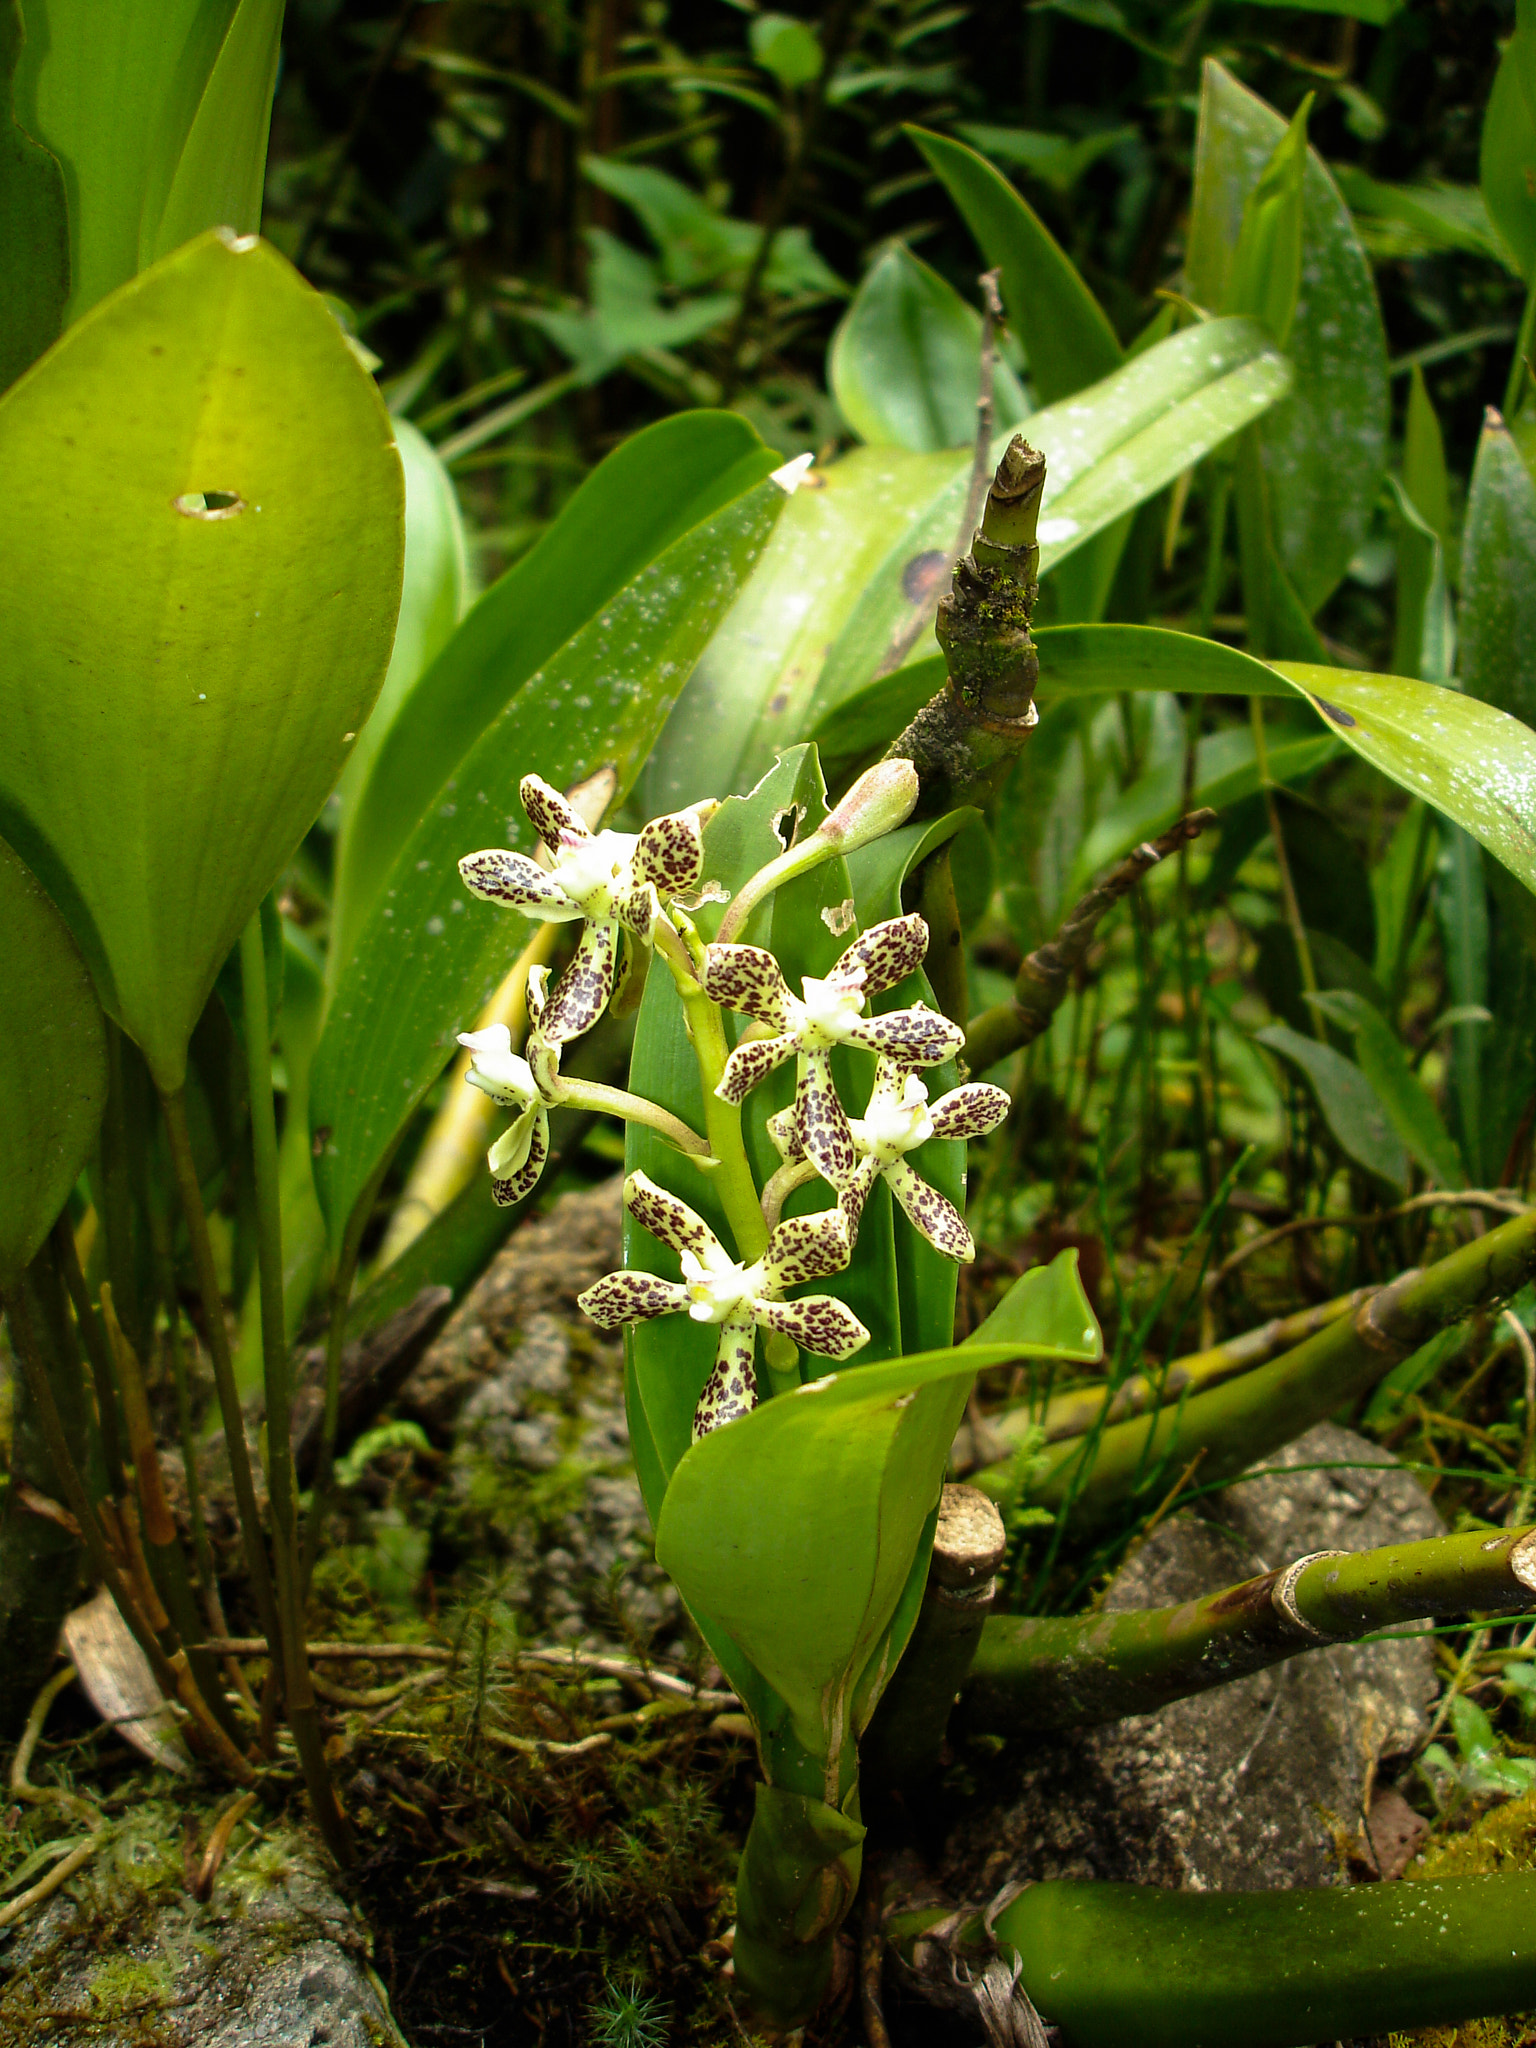 Sony DSC-W7 sample photo. Orchids in machu picchu, peru photography